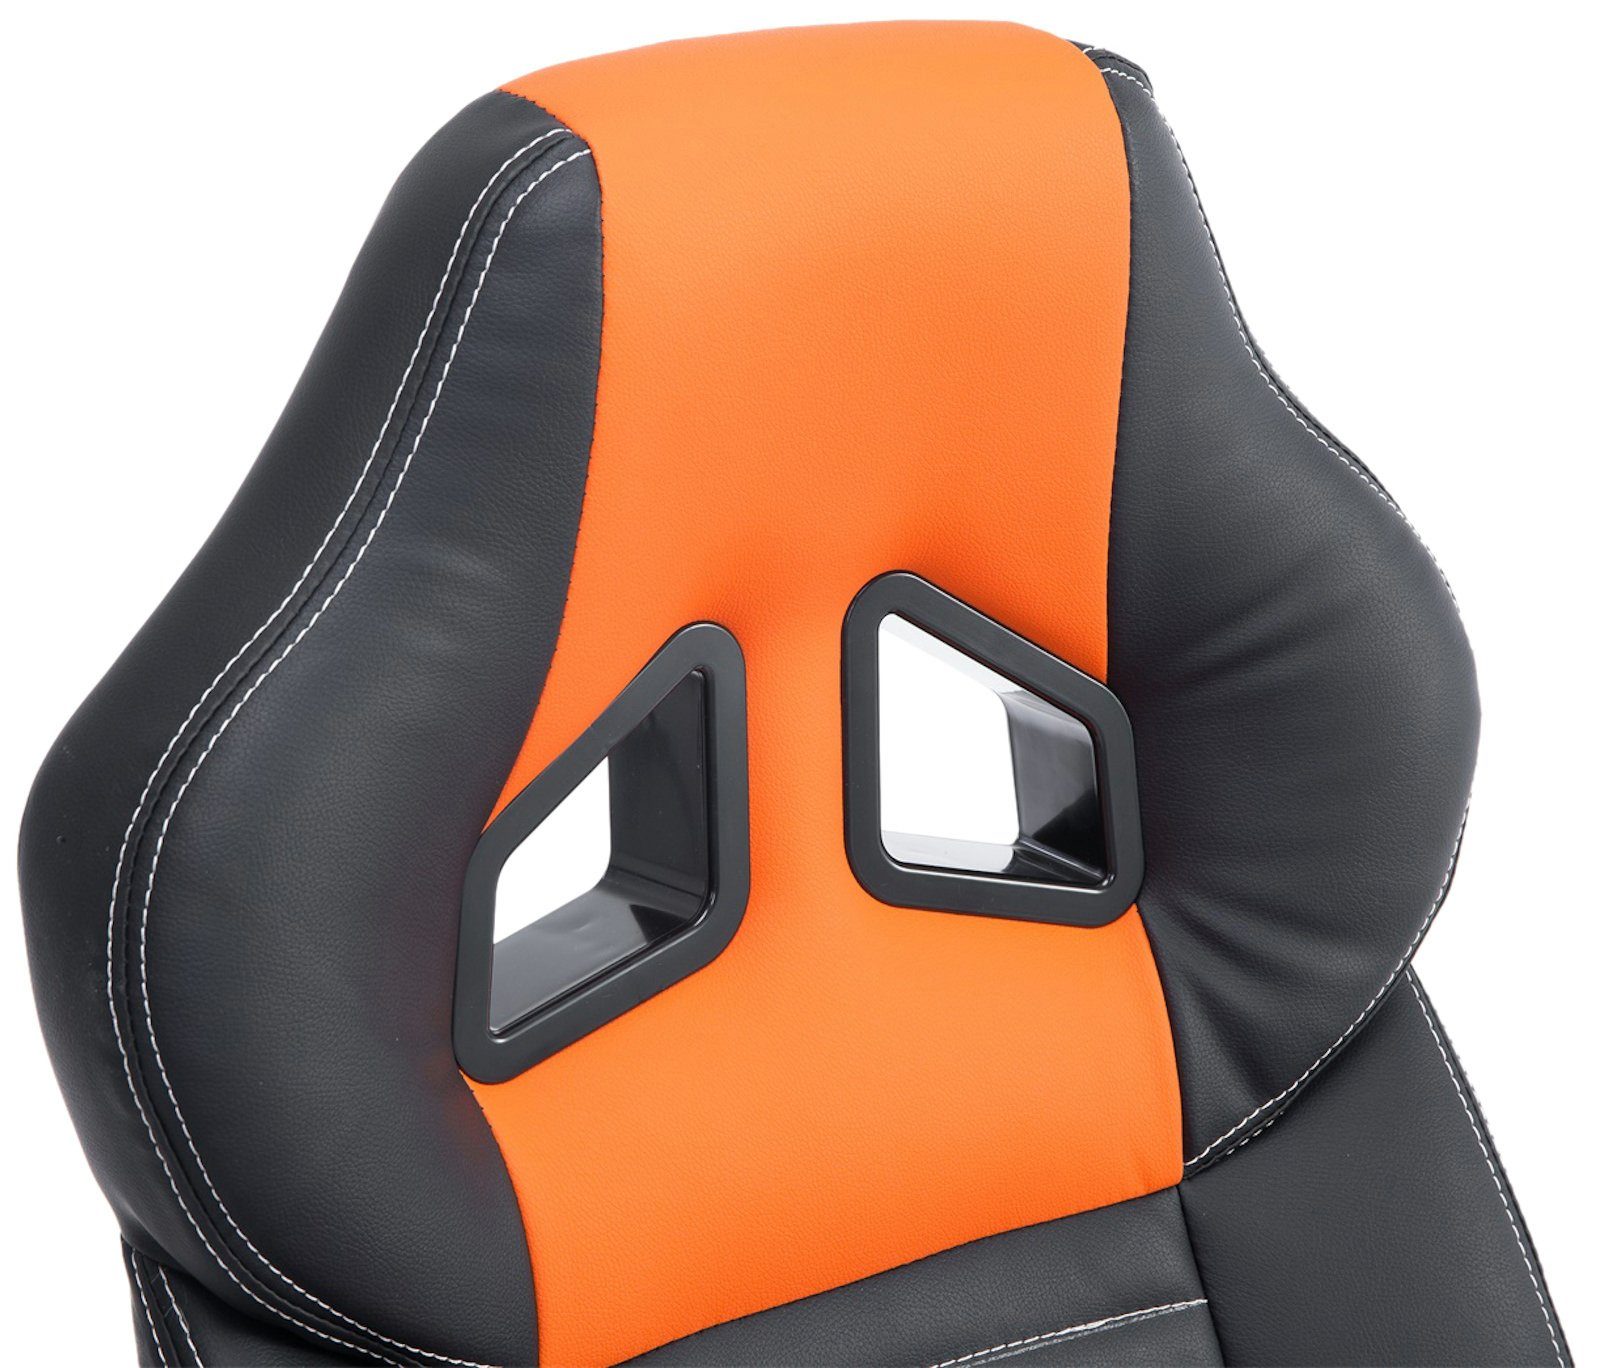 schwarz/orange drehbar Höhenverstellung Pedro, Gaming Chair CLP mit